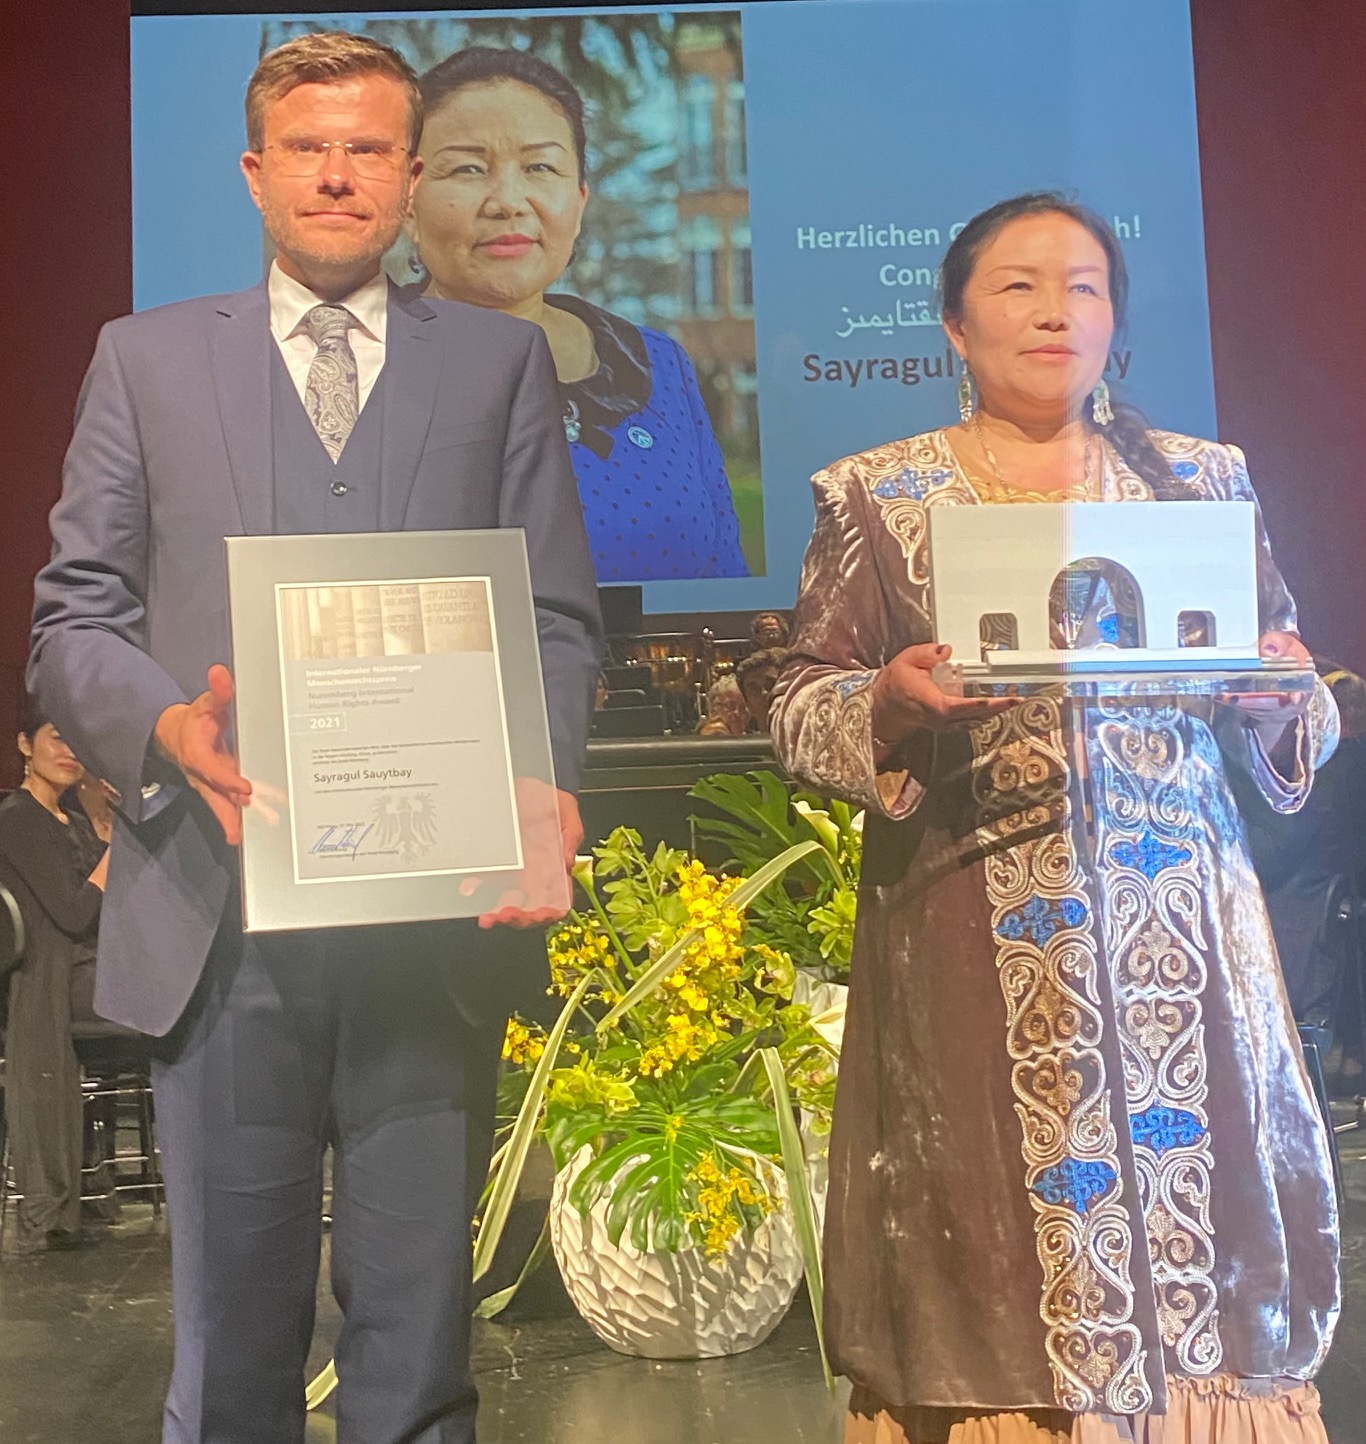 Uluslararası Nürnberg İnsan Hakları Ödülü, Kazak kökenli Müslüman Doktor Sayragul Sauytbay’a verildi.